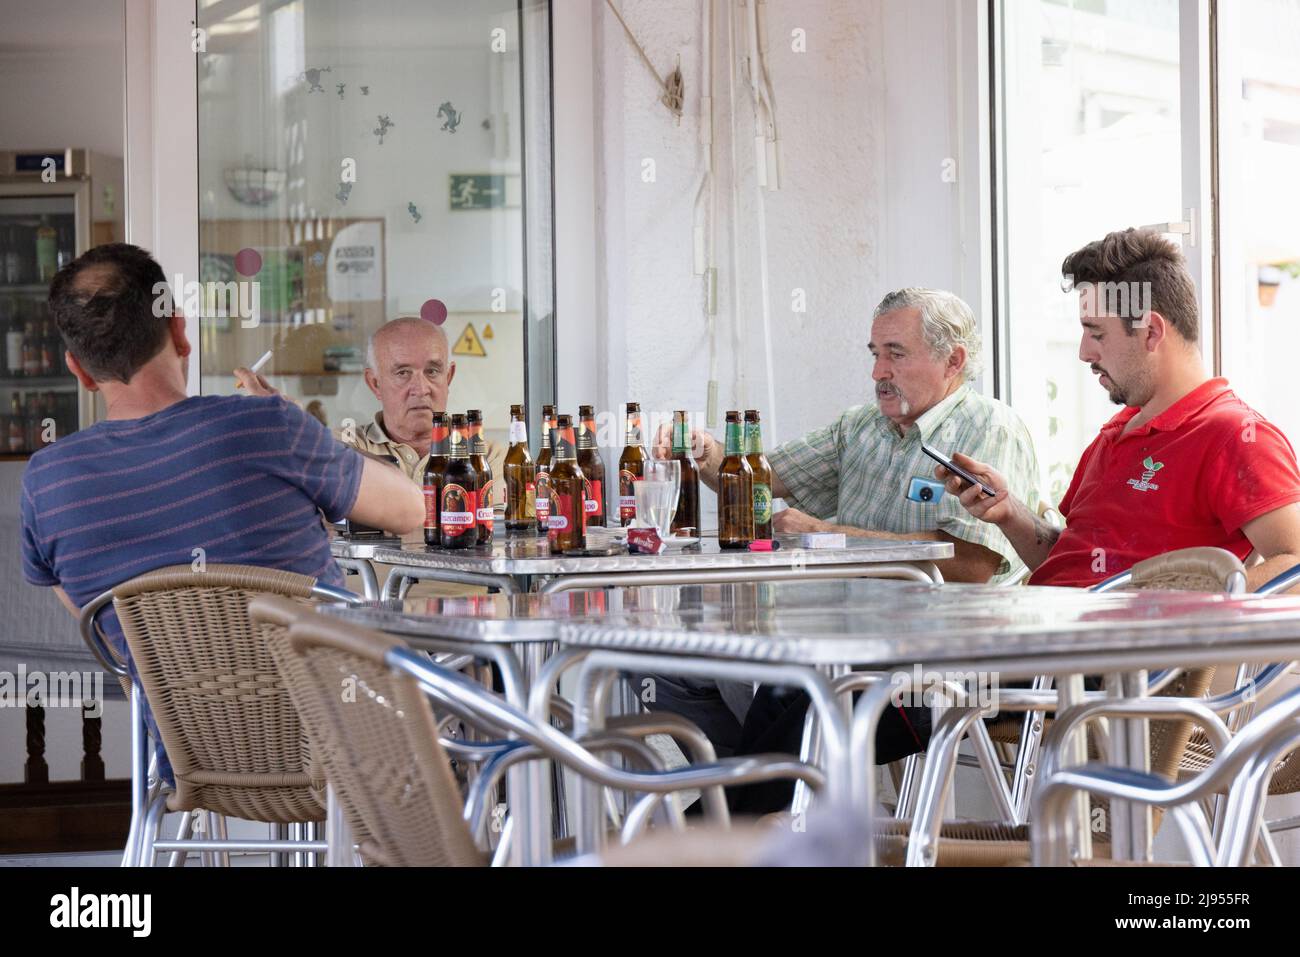 Style de vie espagnol; Un groupe d'hommes d'âge moyen assis à une table de boire de la bière dans un bar pendant la journée, Andalousie, Espagne, Europe Banque D'Images